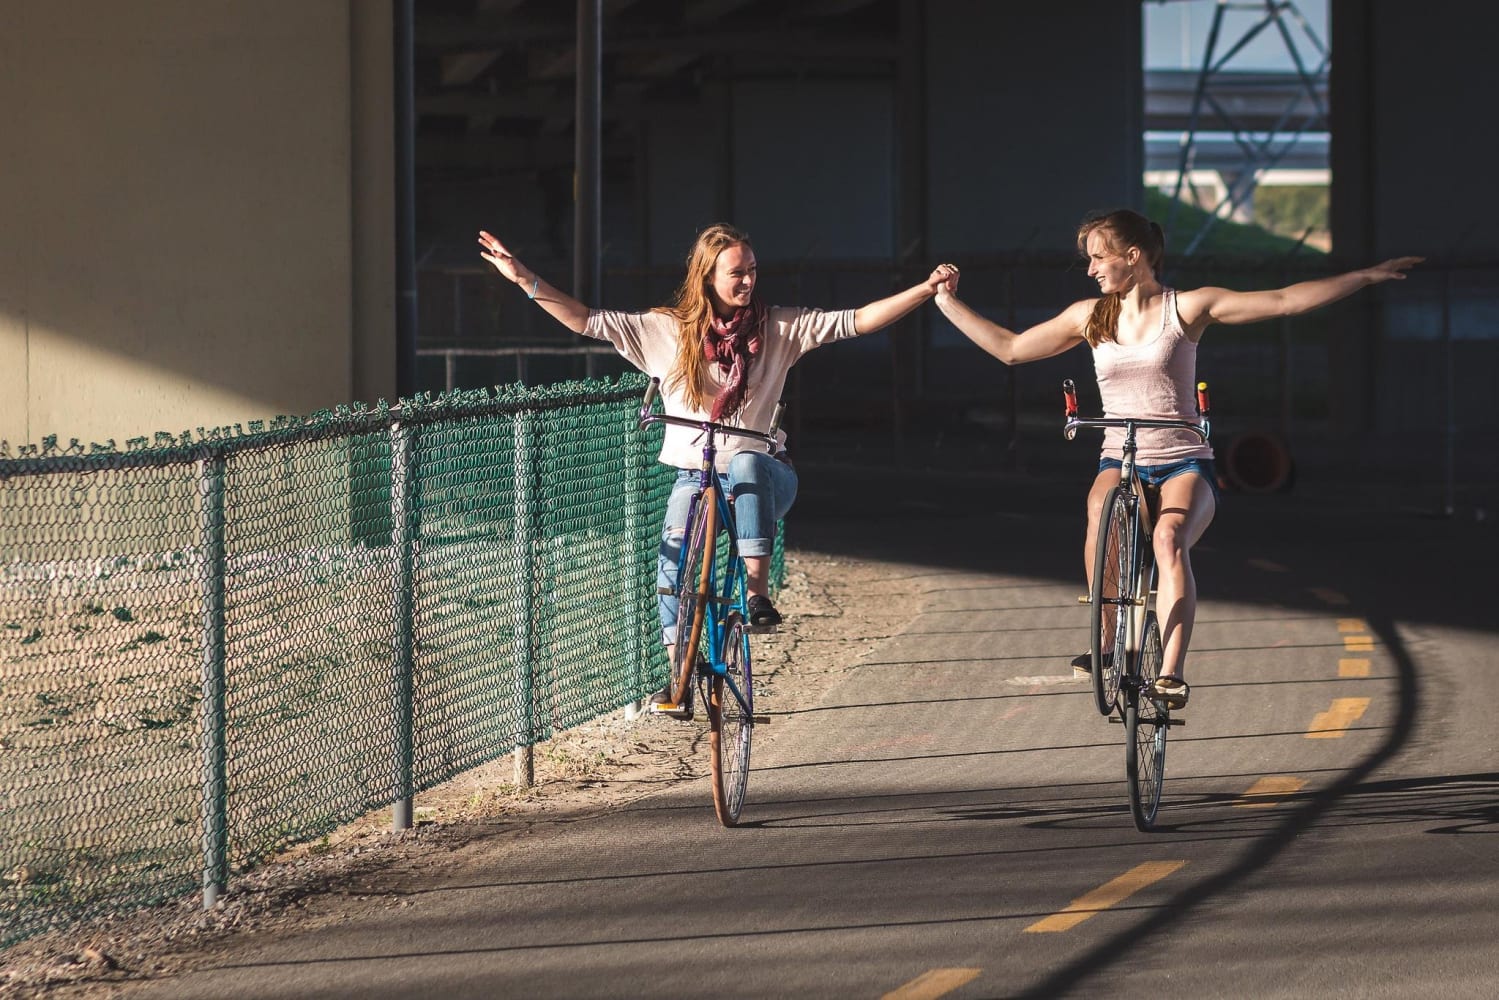 Manobras de bicicleta que são 'febre' nas periferias promovem encontros e  ocupam espaços